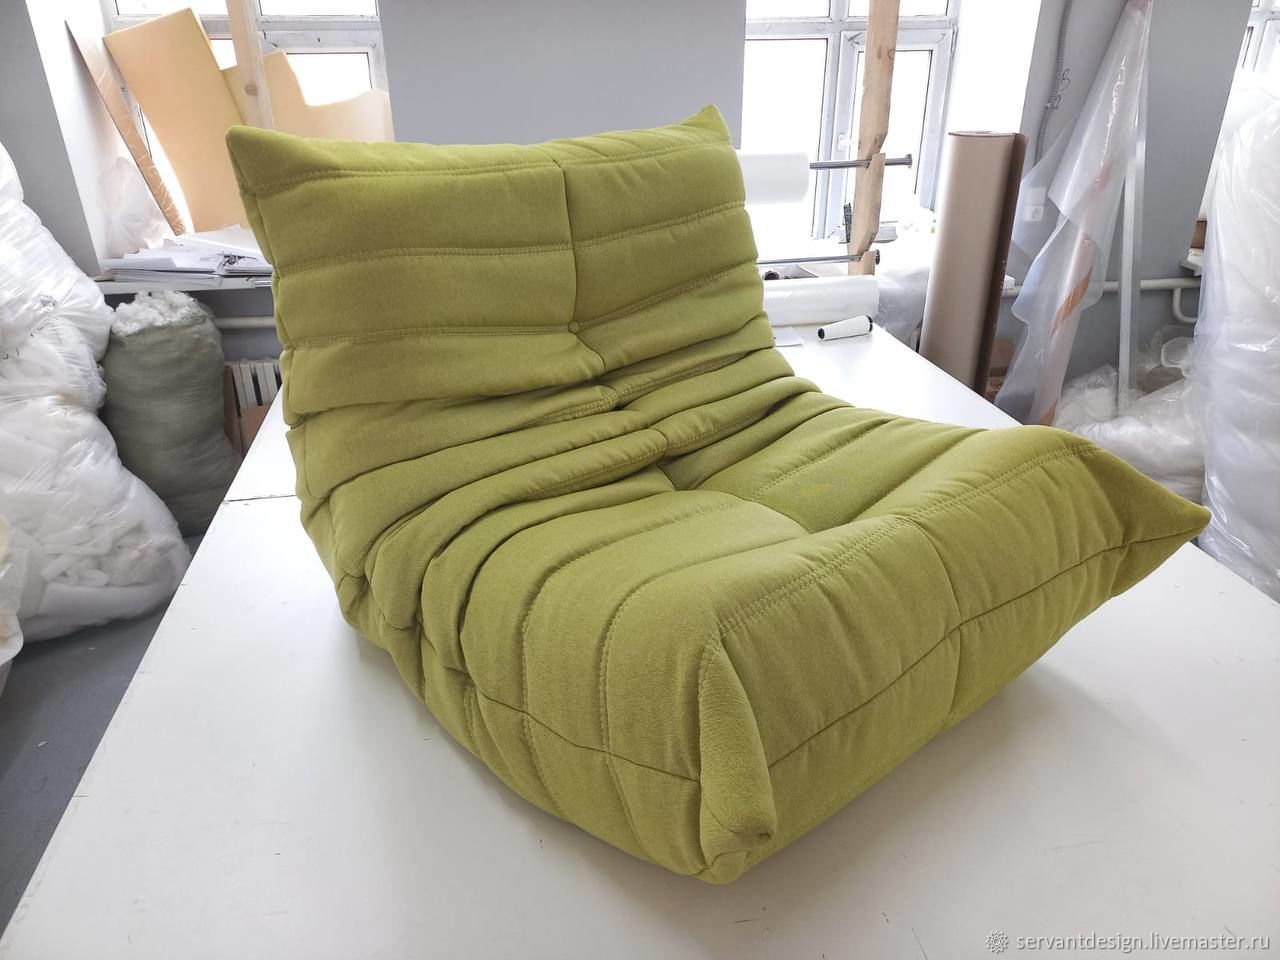 Кресло к мягкой мебели